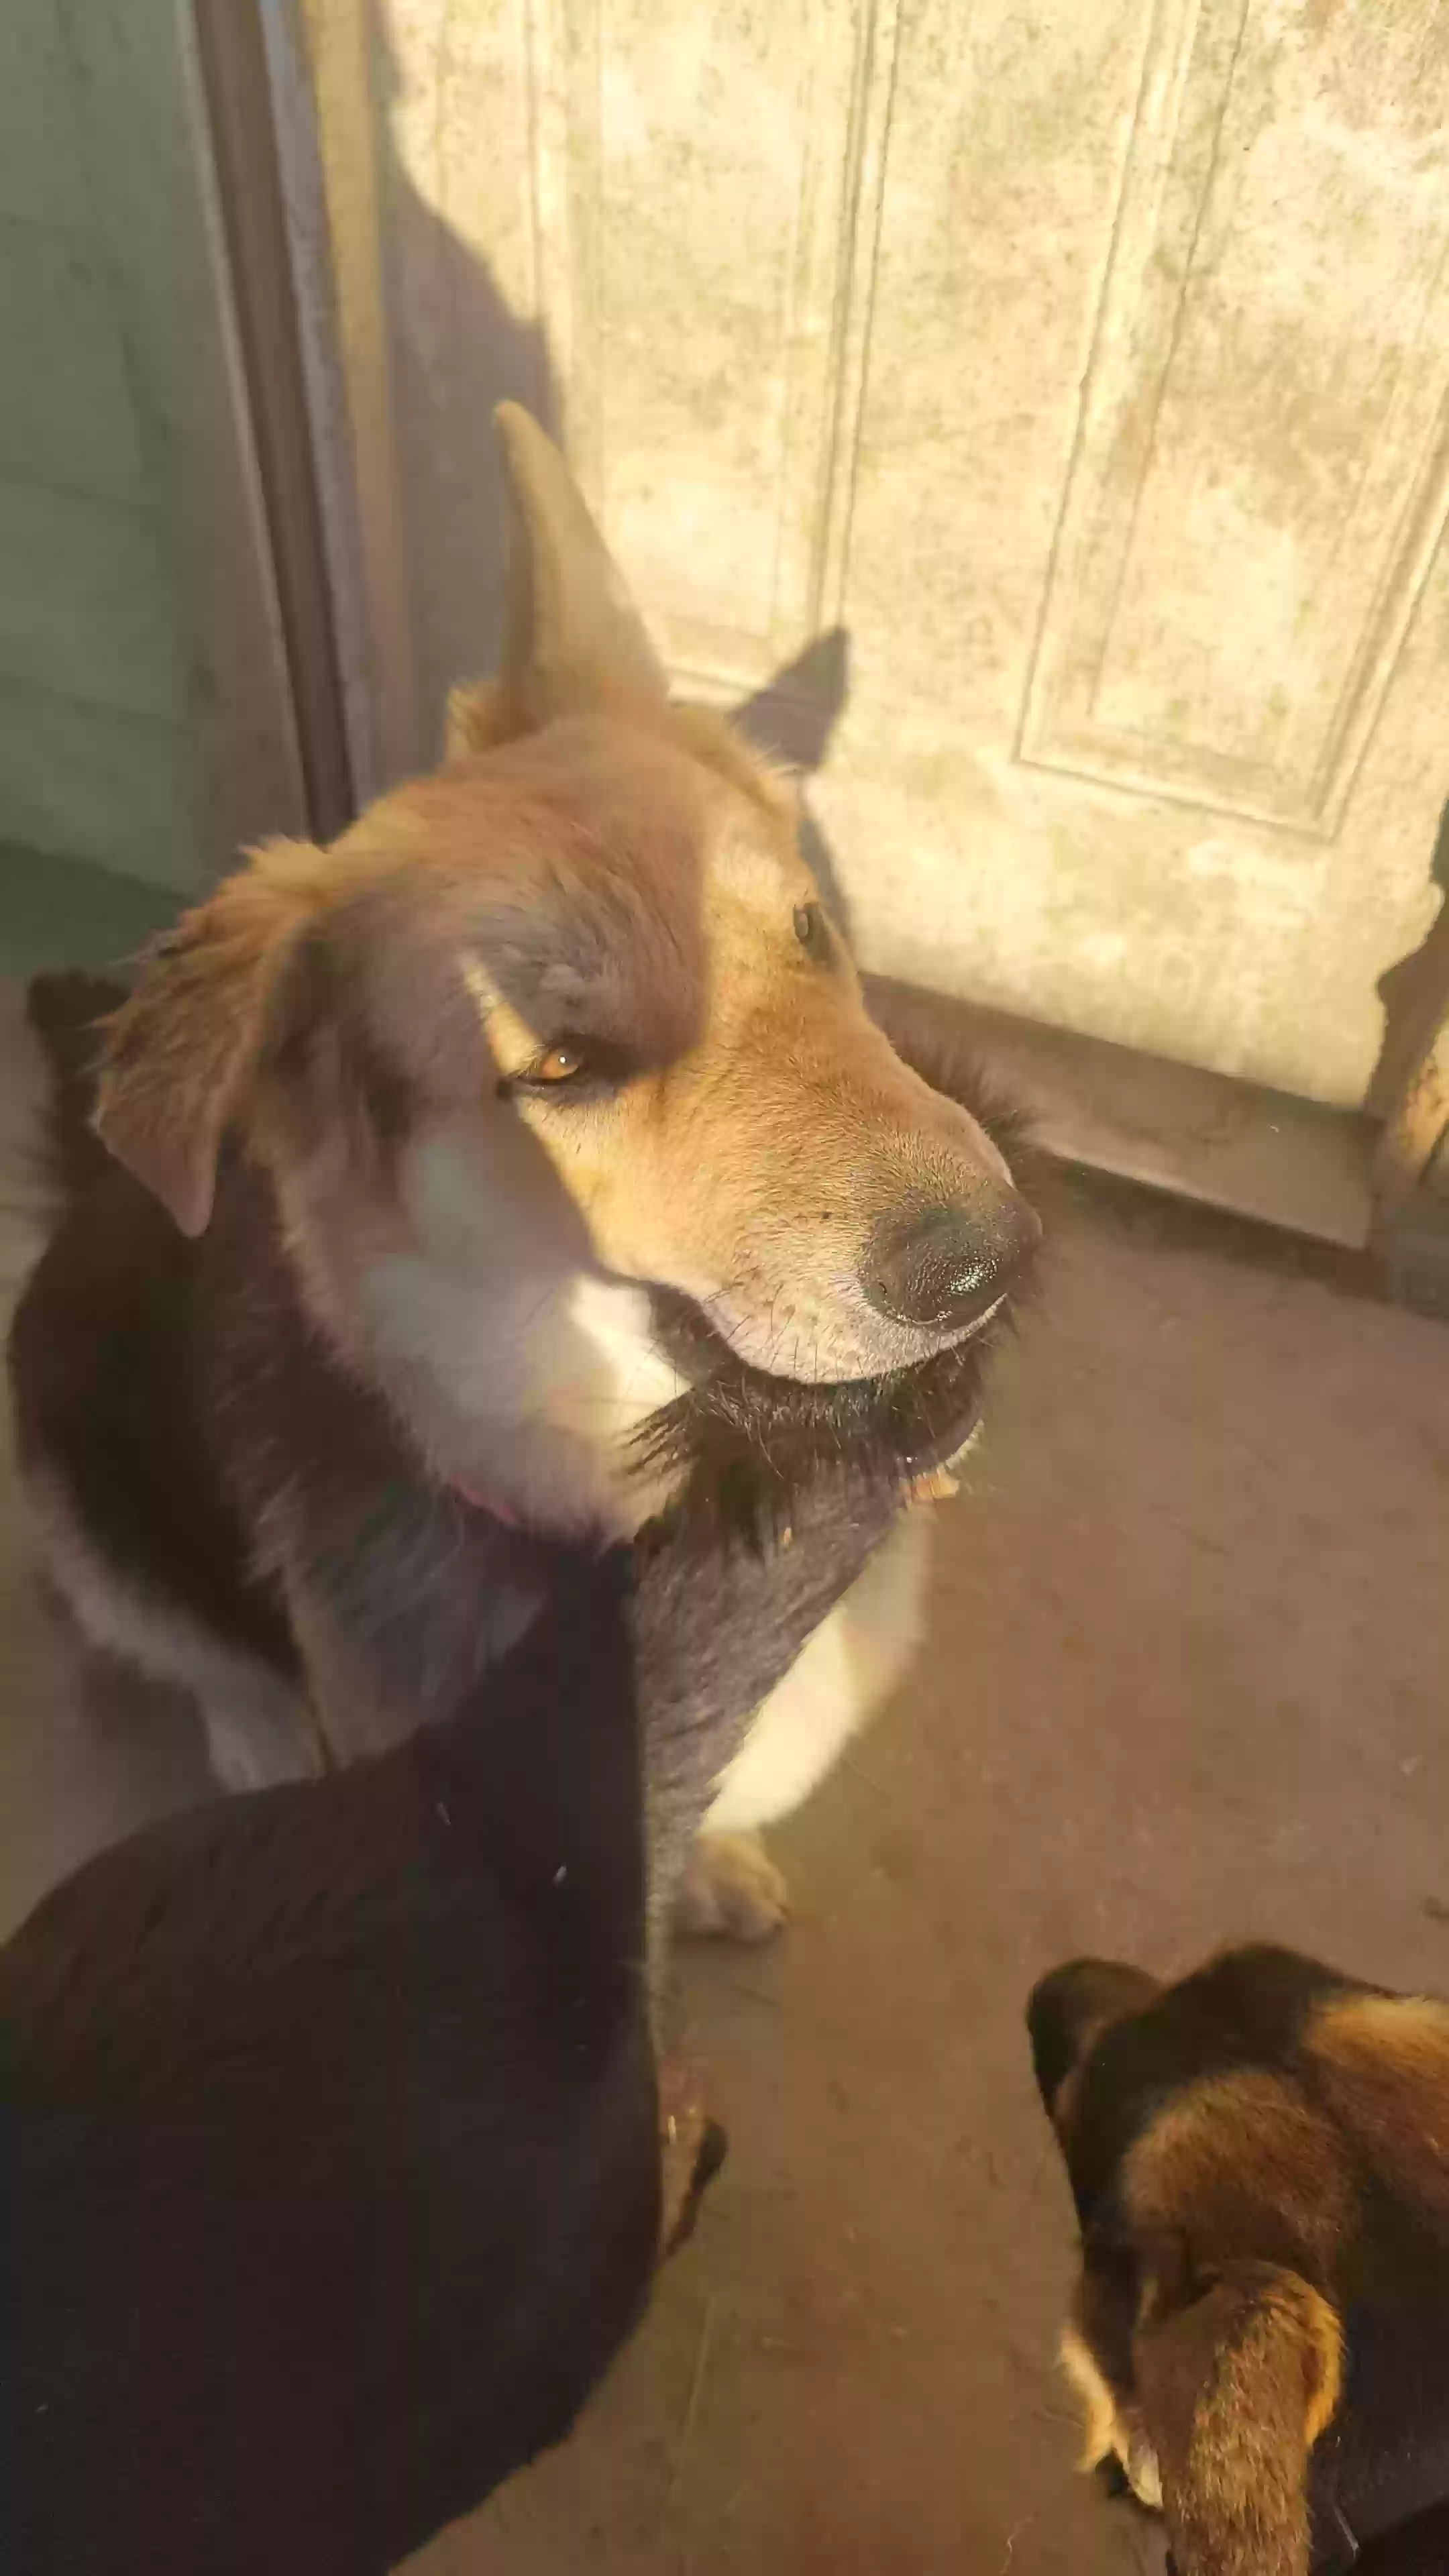 adoptable Dog in Dallas,TX named Veldor